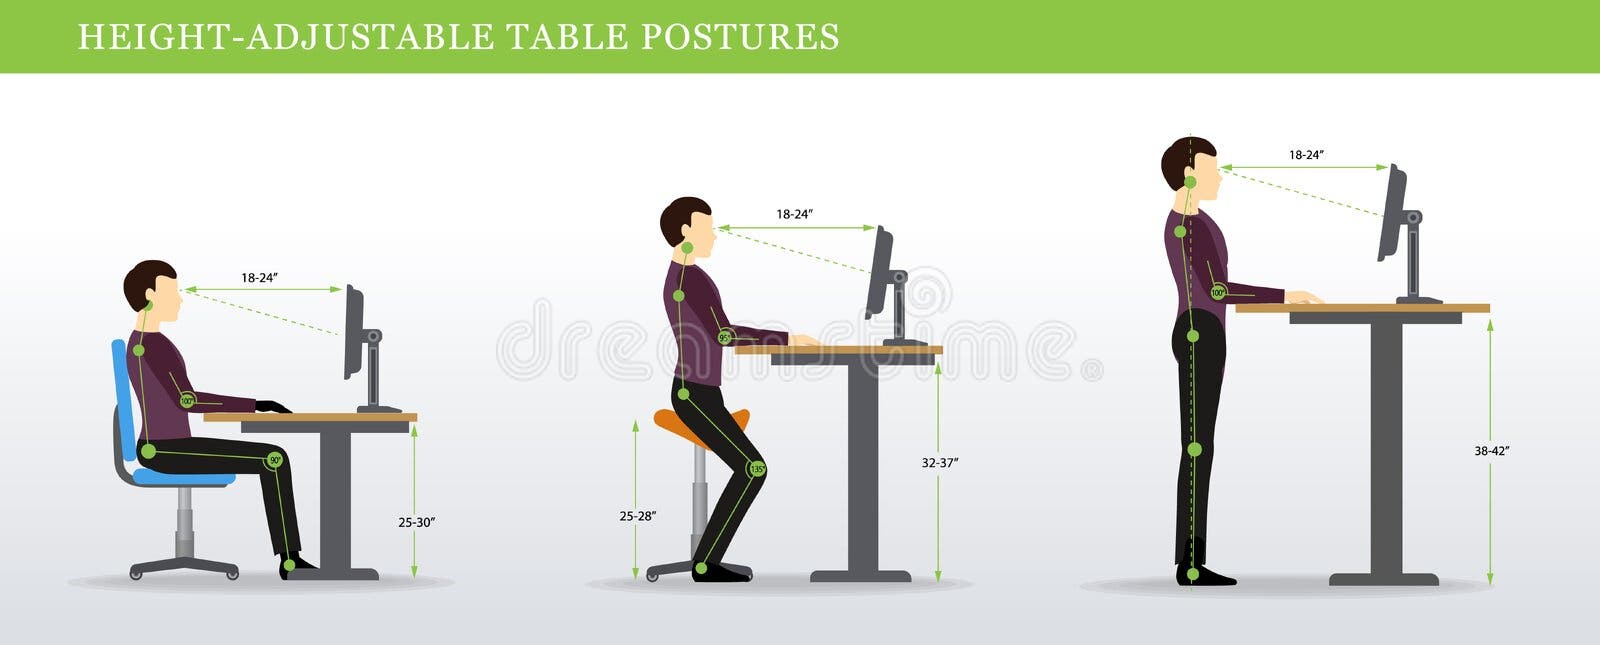 P line height. Высота стола для стоячей работы. Высота для стоячих мест. Стол регулир по высоте для позицион. Правильная Постура в картинках.